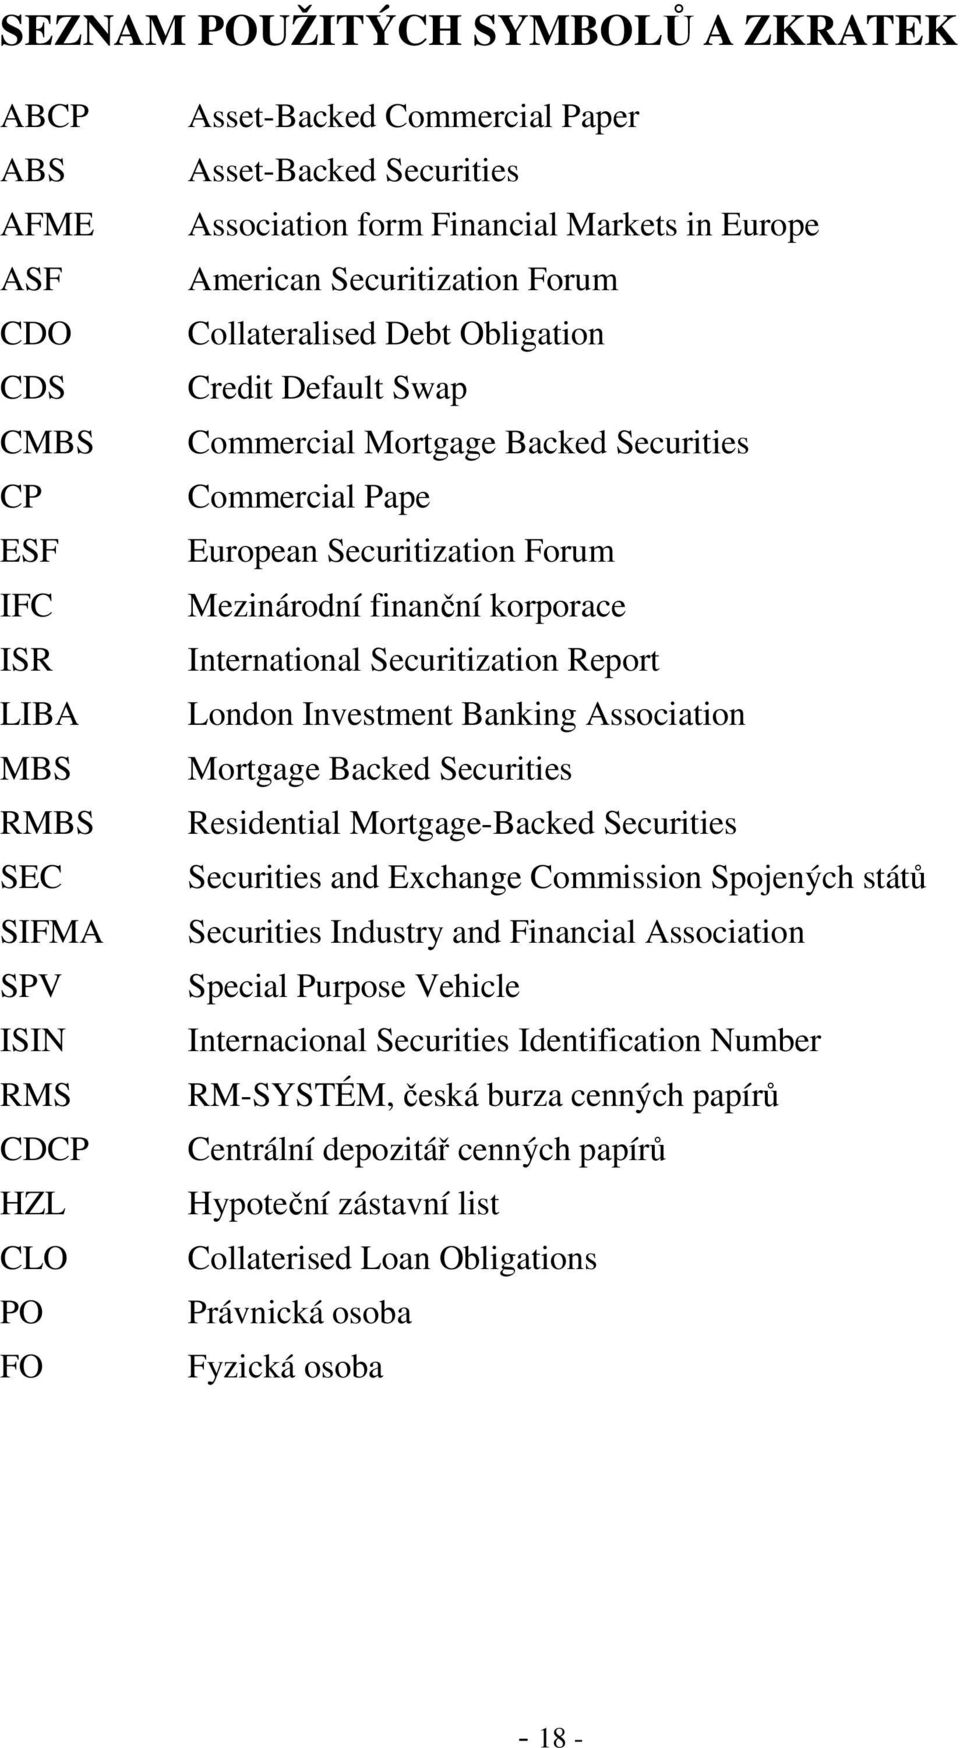 Securitization Forum Mezinárodní finanční korporace International Securitization Report London Investment Banking Association Mortgage Backed Securities Residential Mortgage-Backed Securities